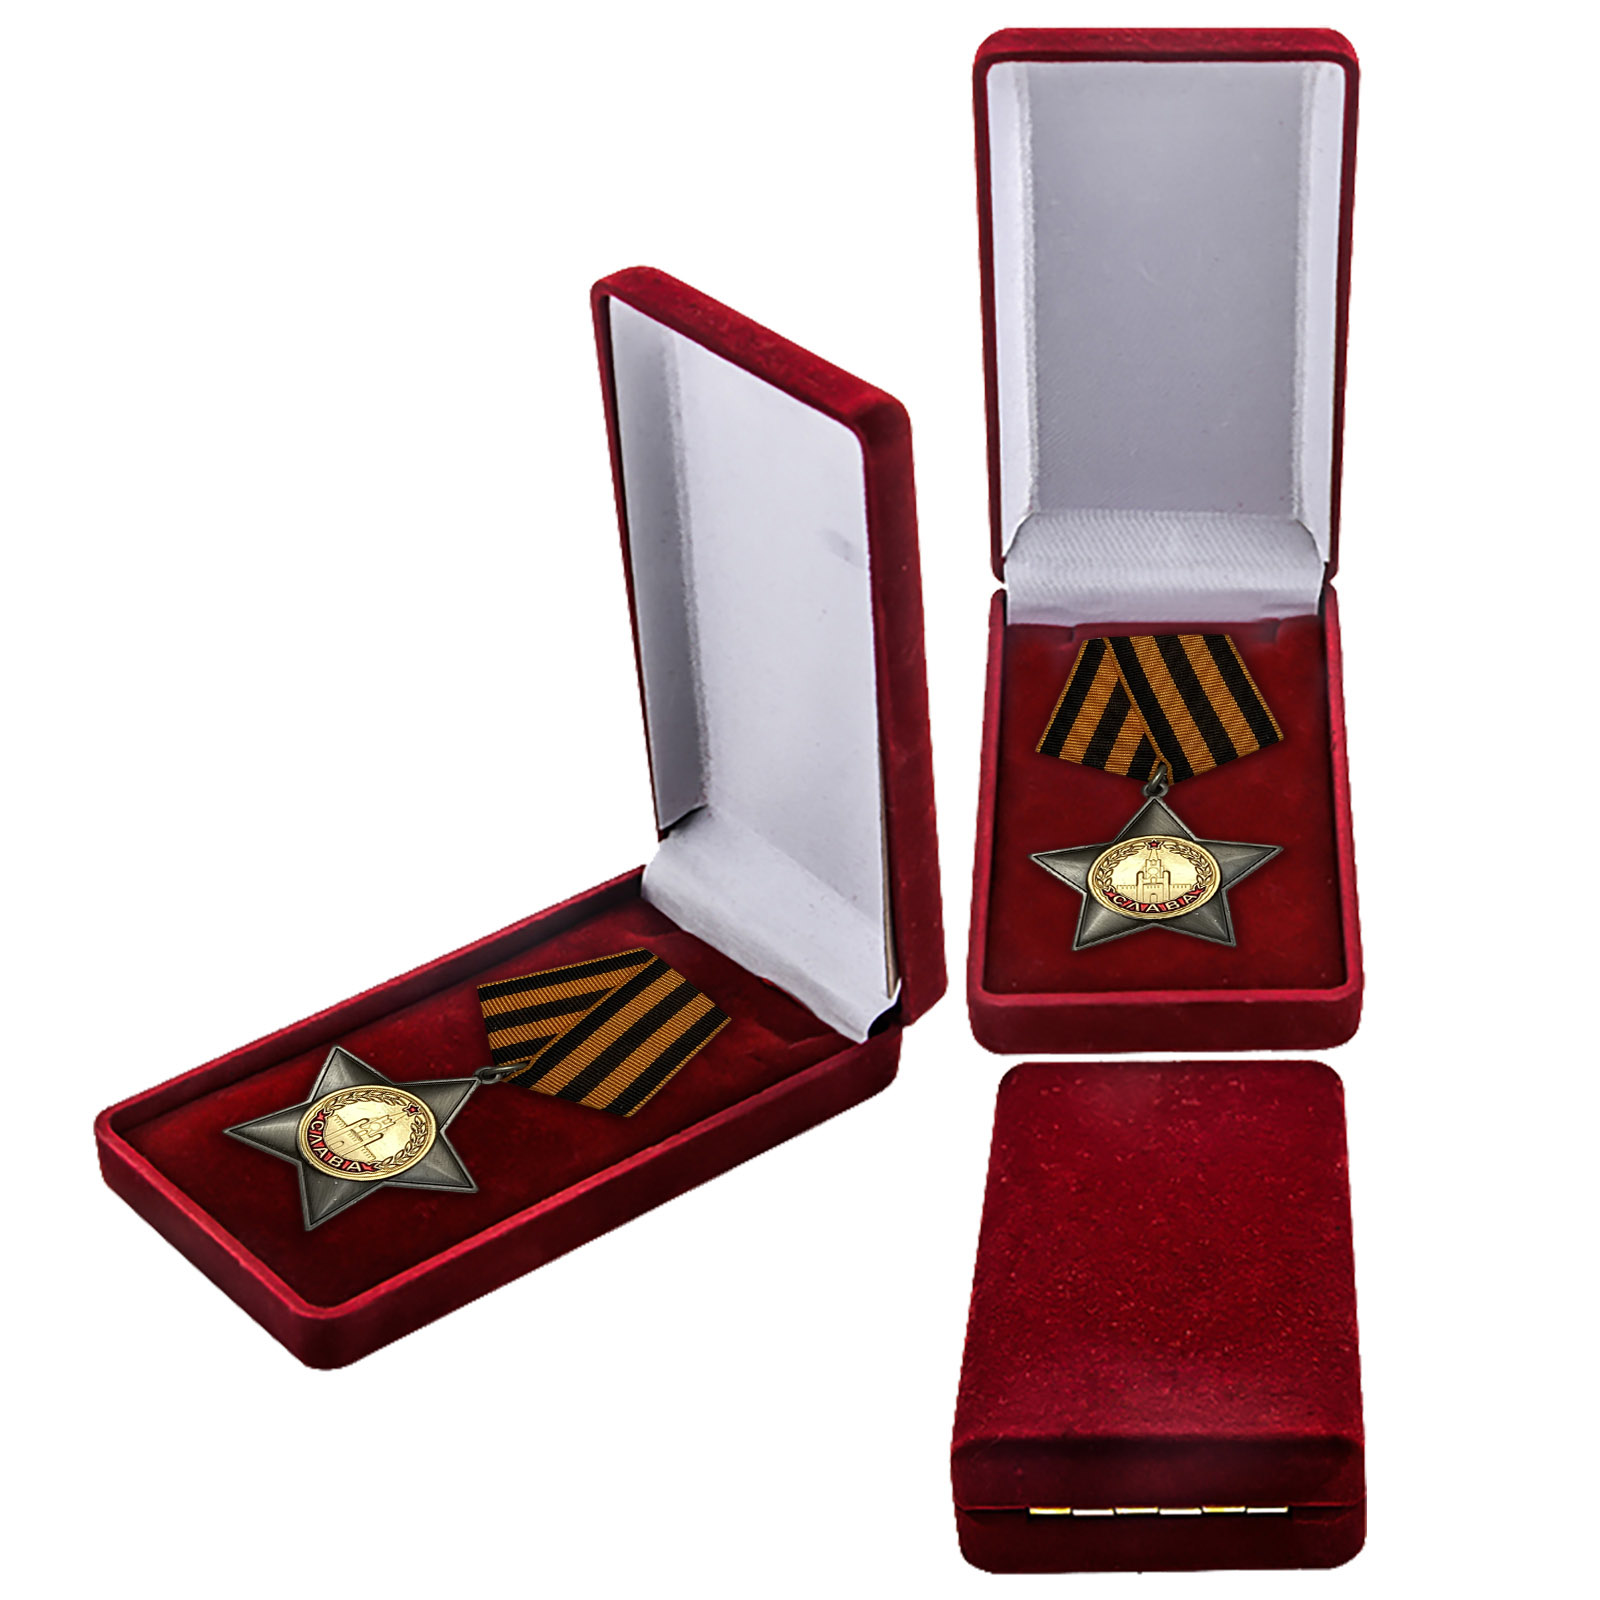 Орден Славы II степени (реплика) в футляре